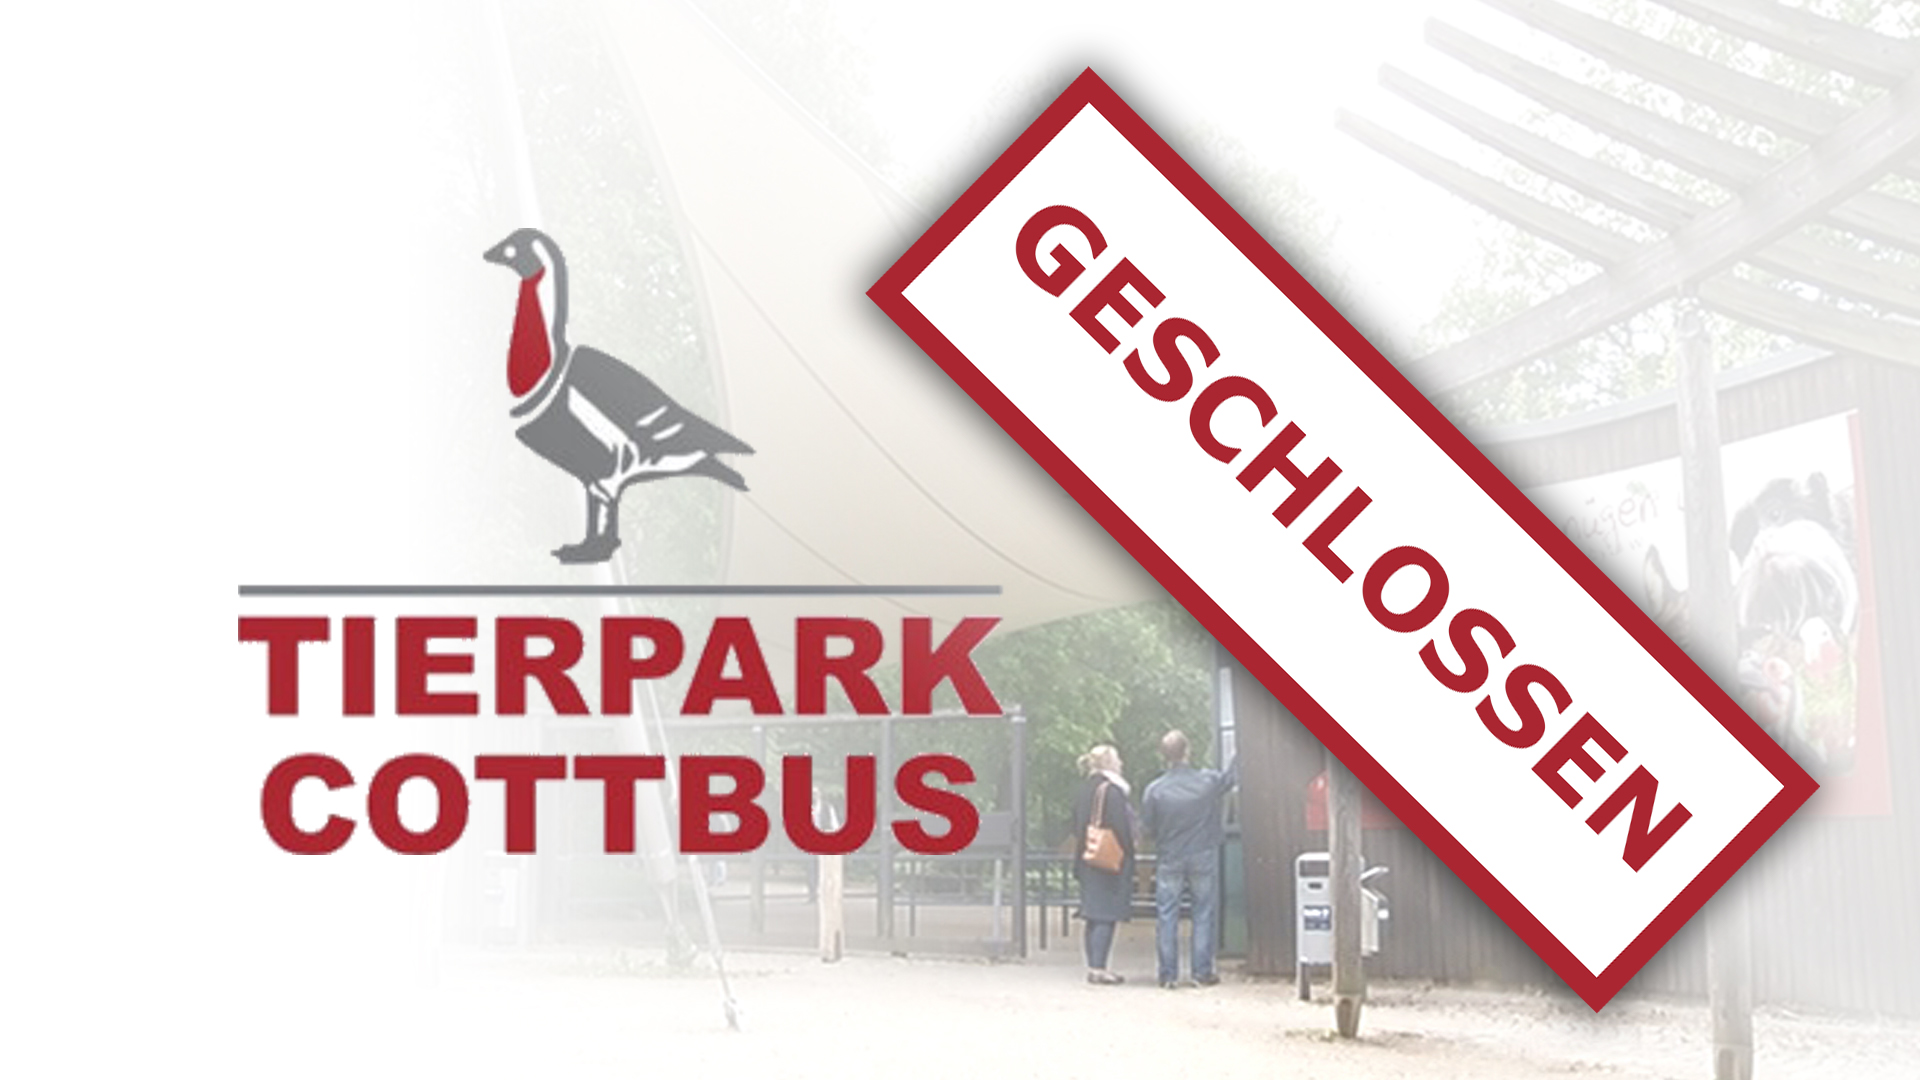 Cottbuser Tierpark als Schild mit Text geschlossen